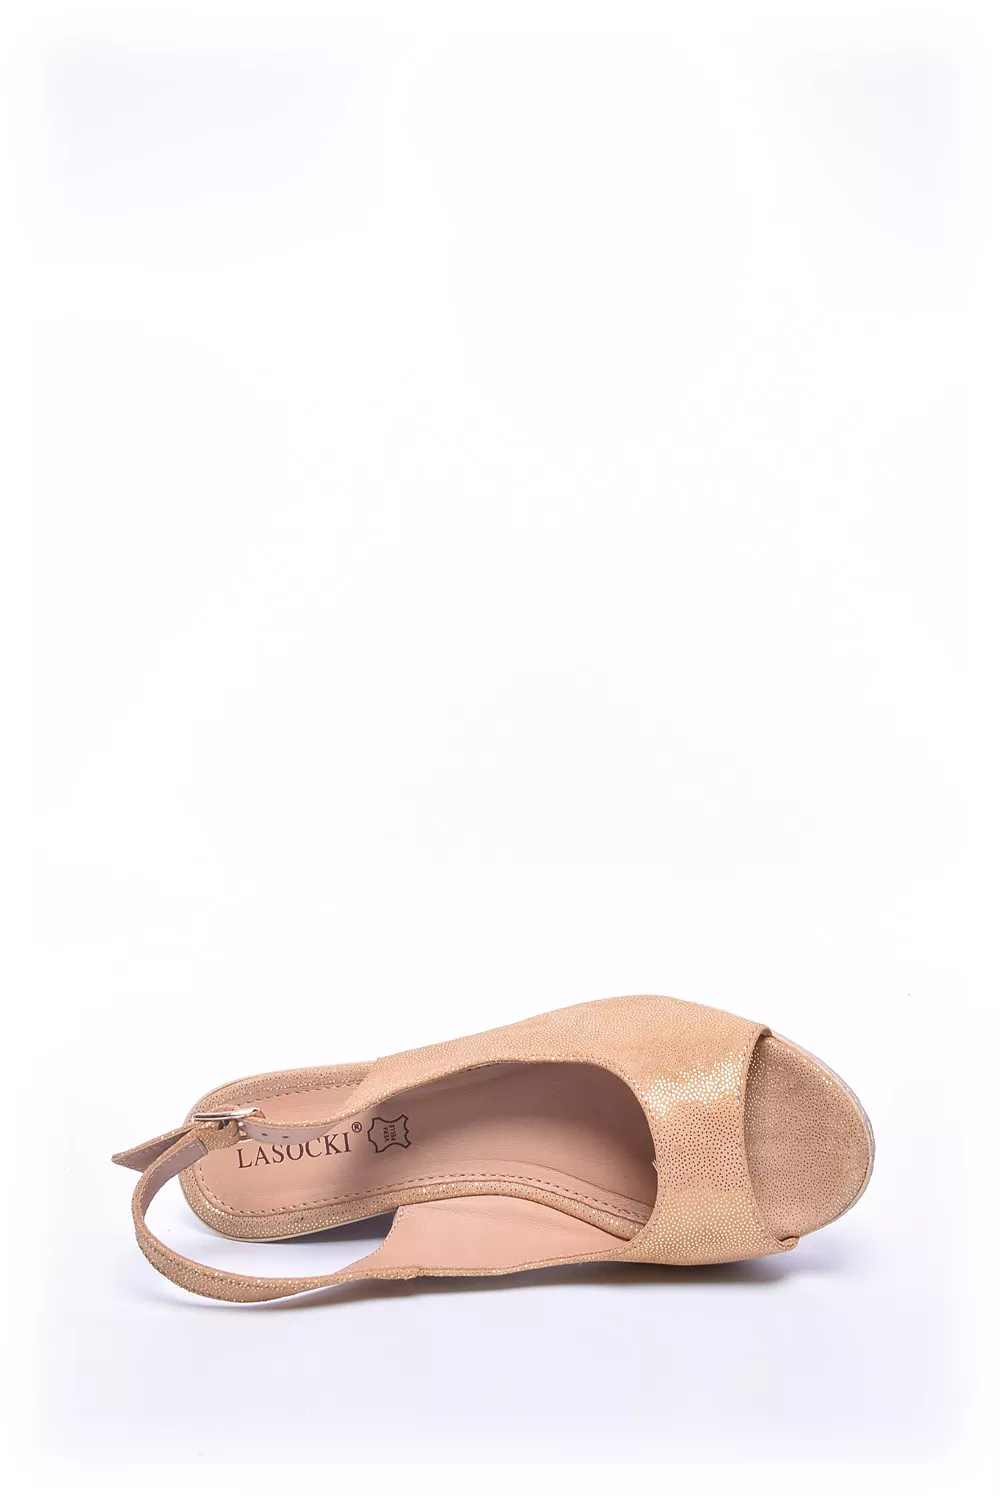 Sandale dama [4]